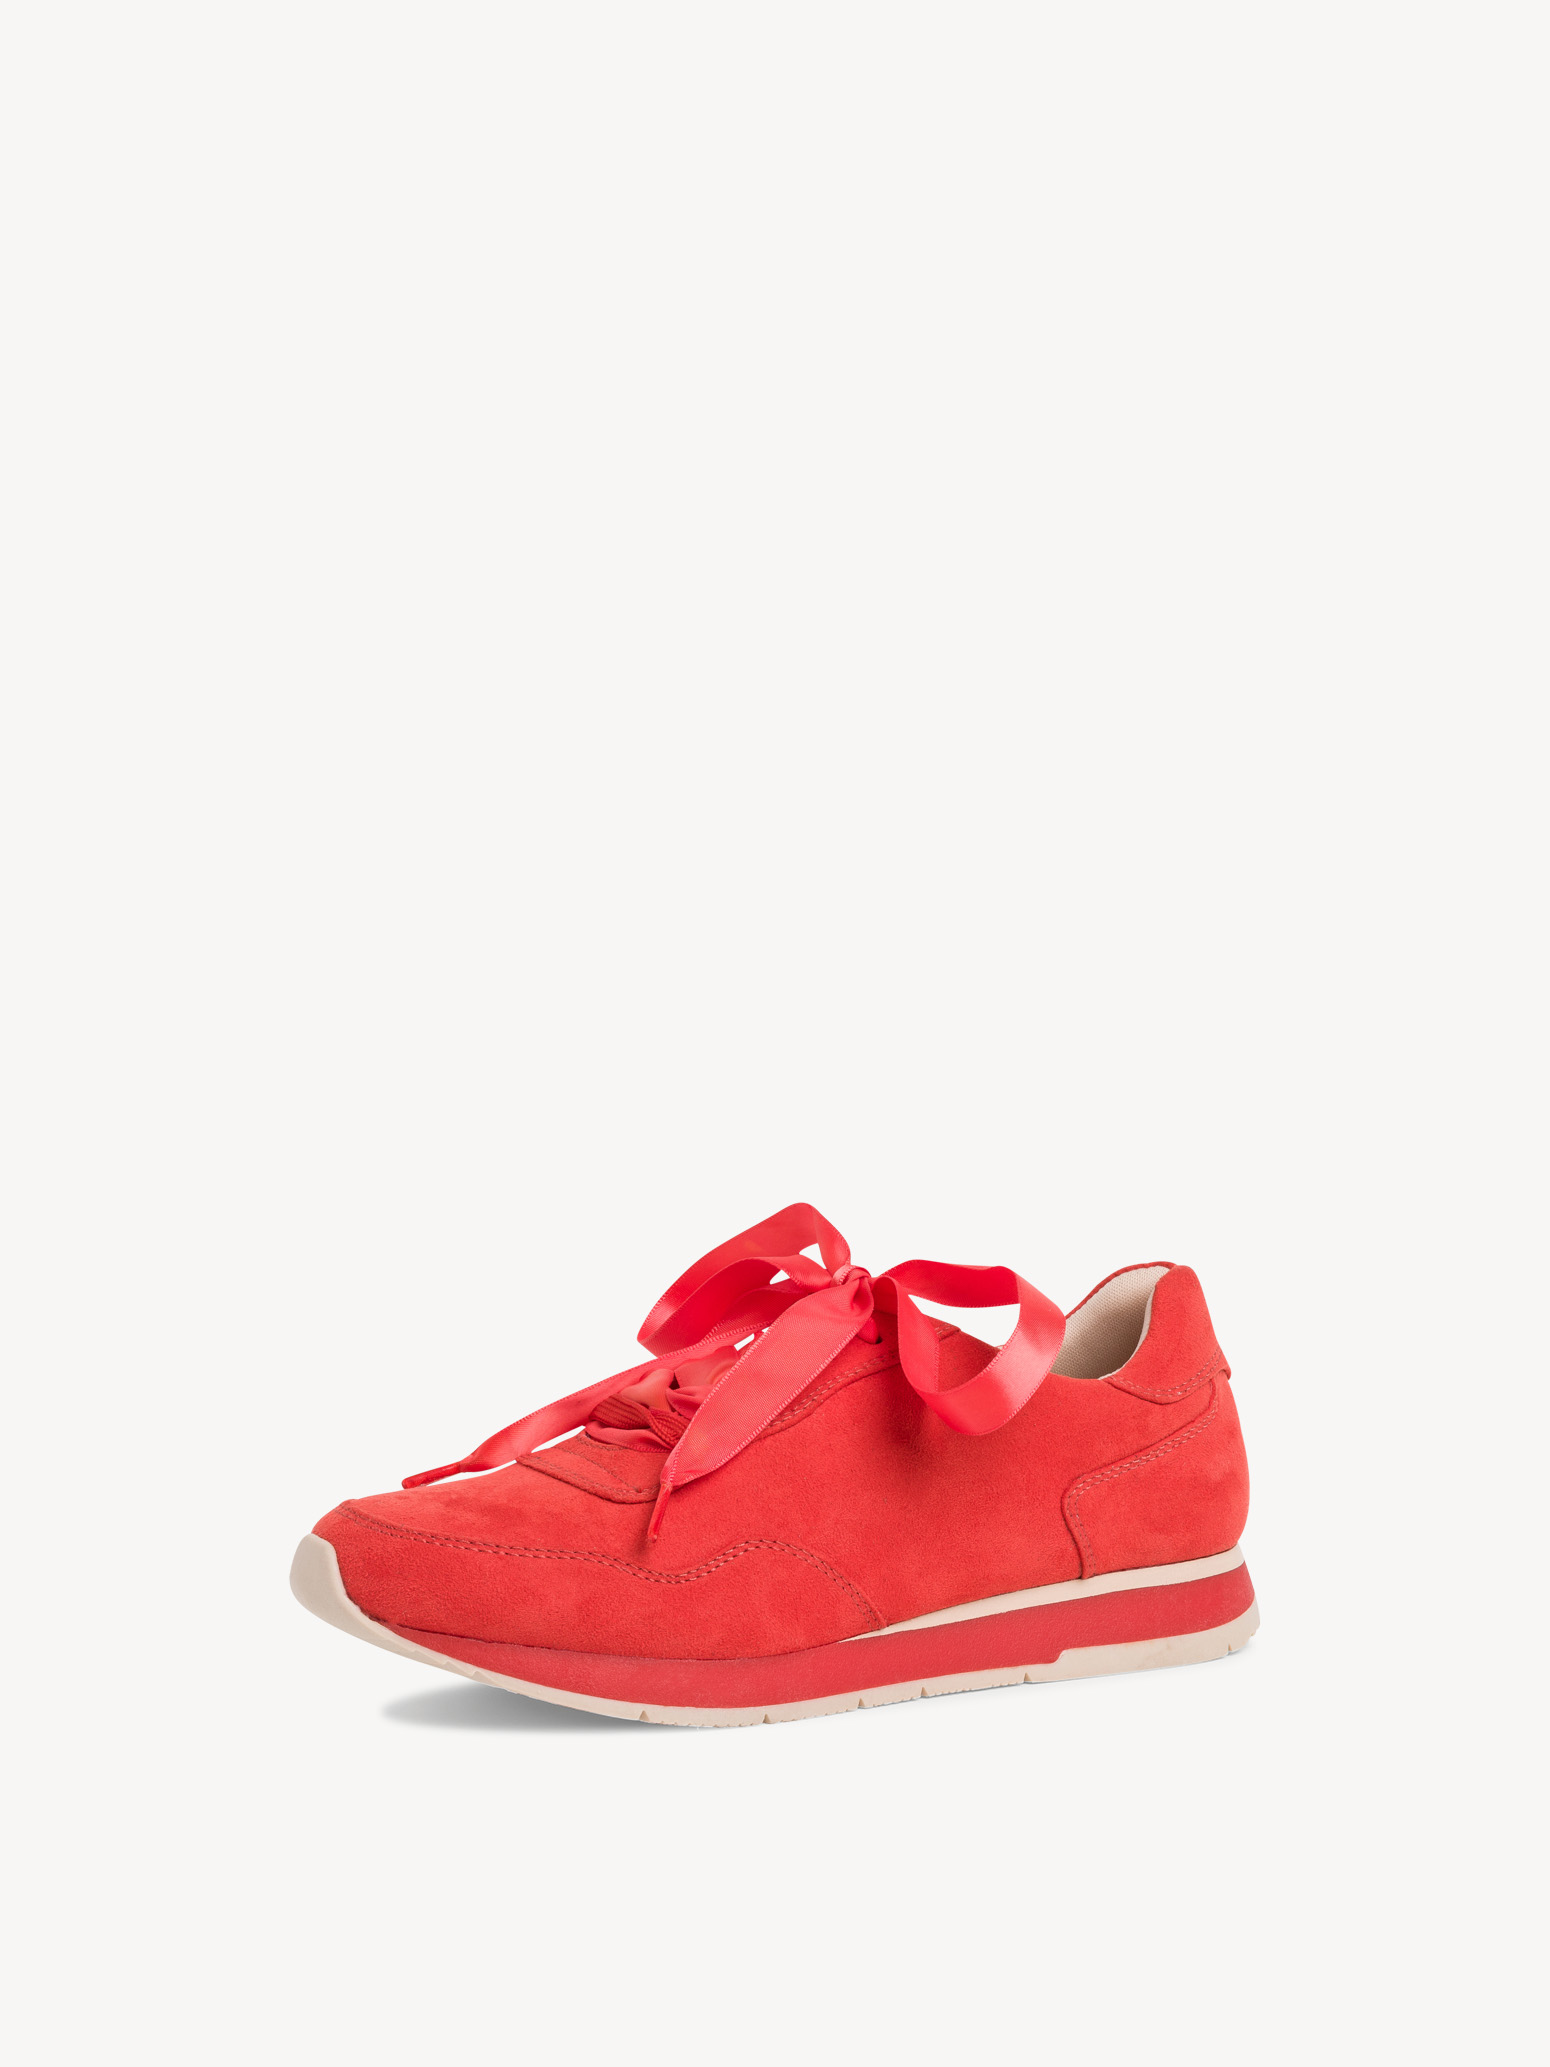 Ботинки на шнурках женские (огненно-красный) - изображение №1